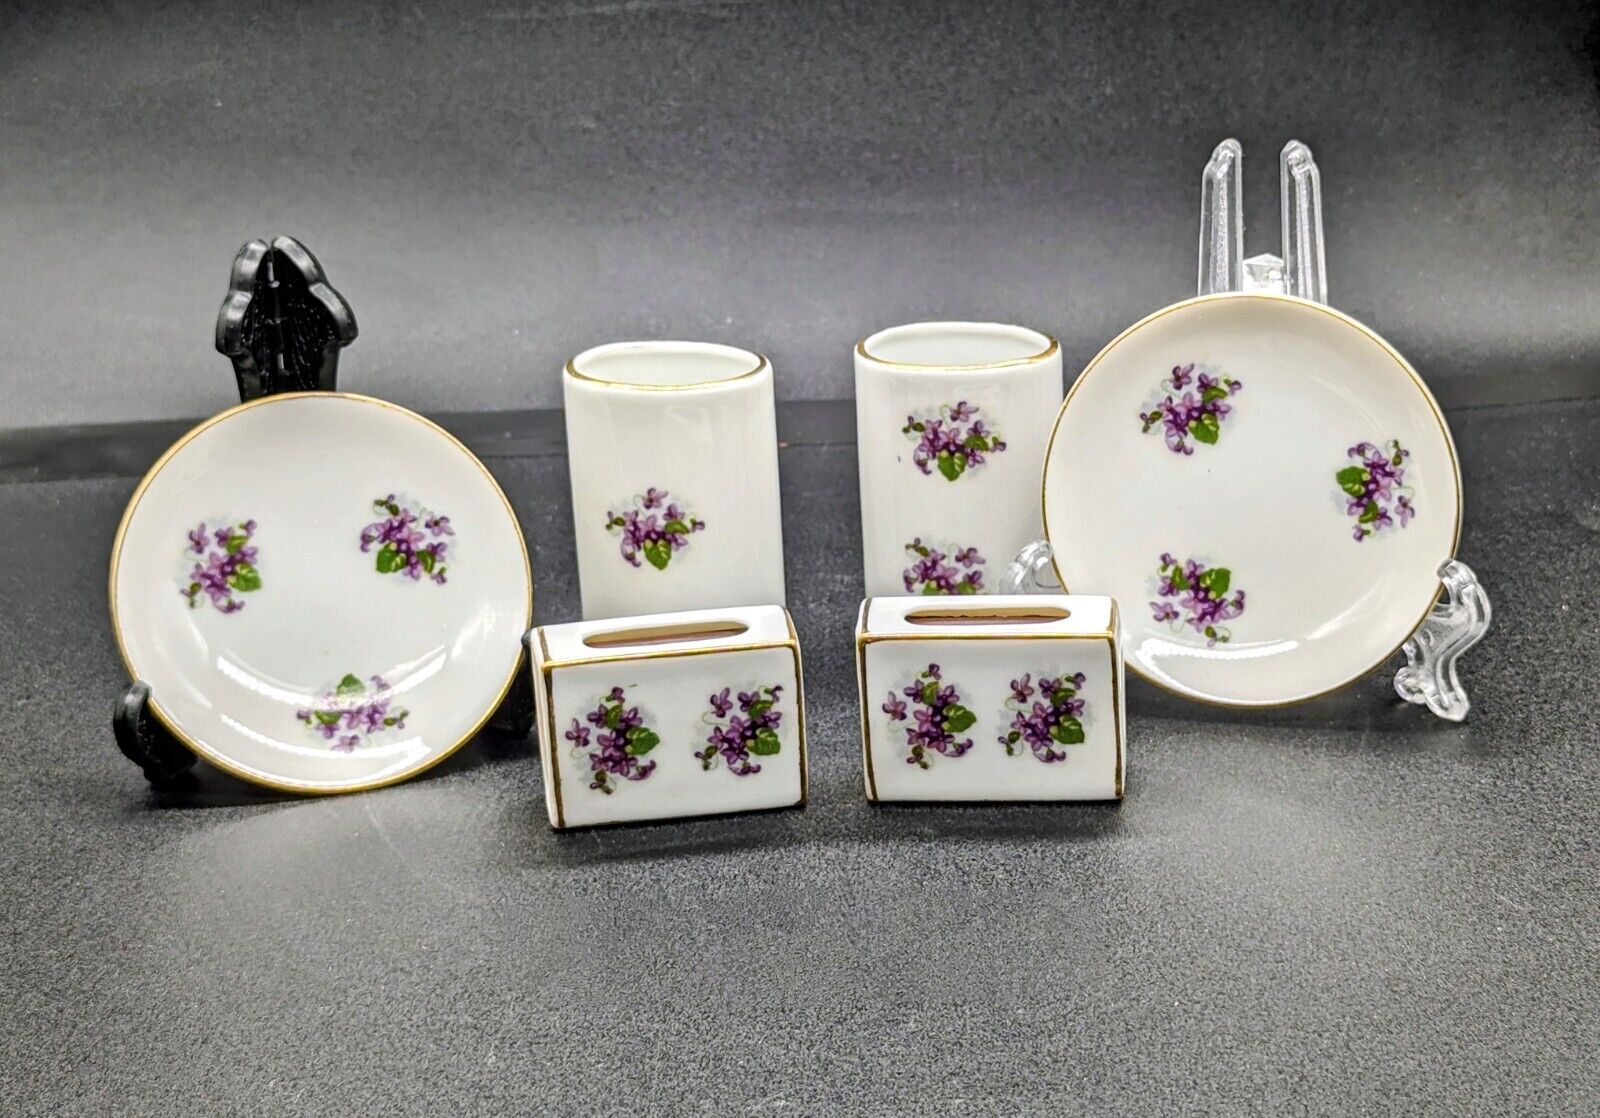 VTG Japan Porcelain Purple Floral Matchbox Holder, Cigarette Holder, & ashtrays 